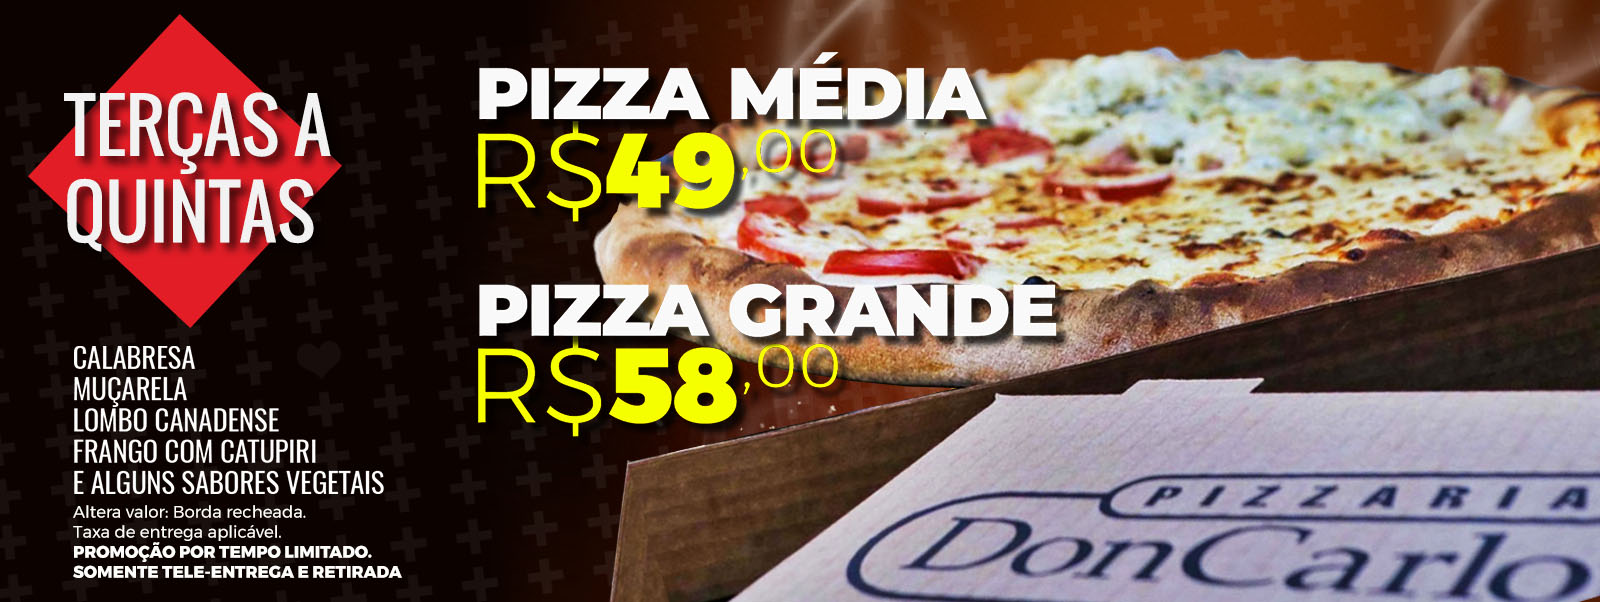 Promoção de Pizza Don Carlone de terças e quintas-feiras